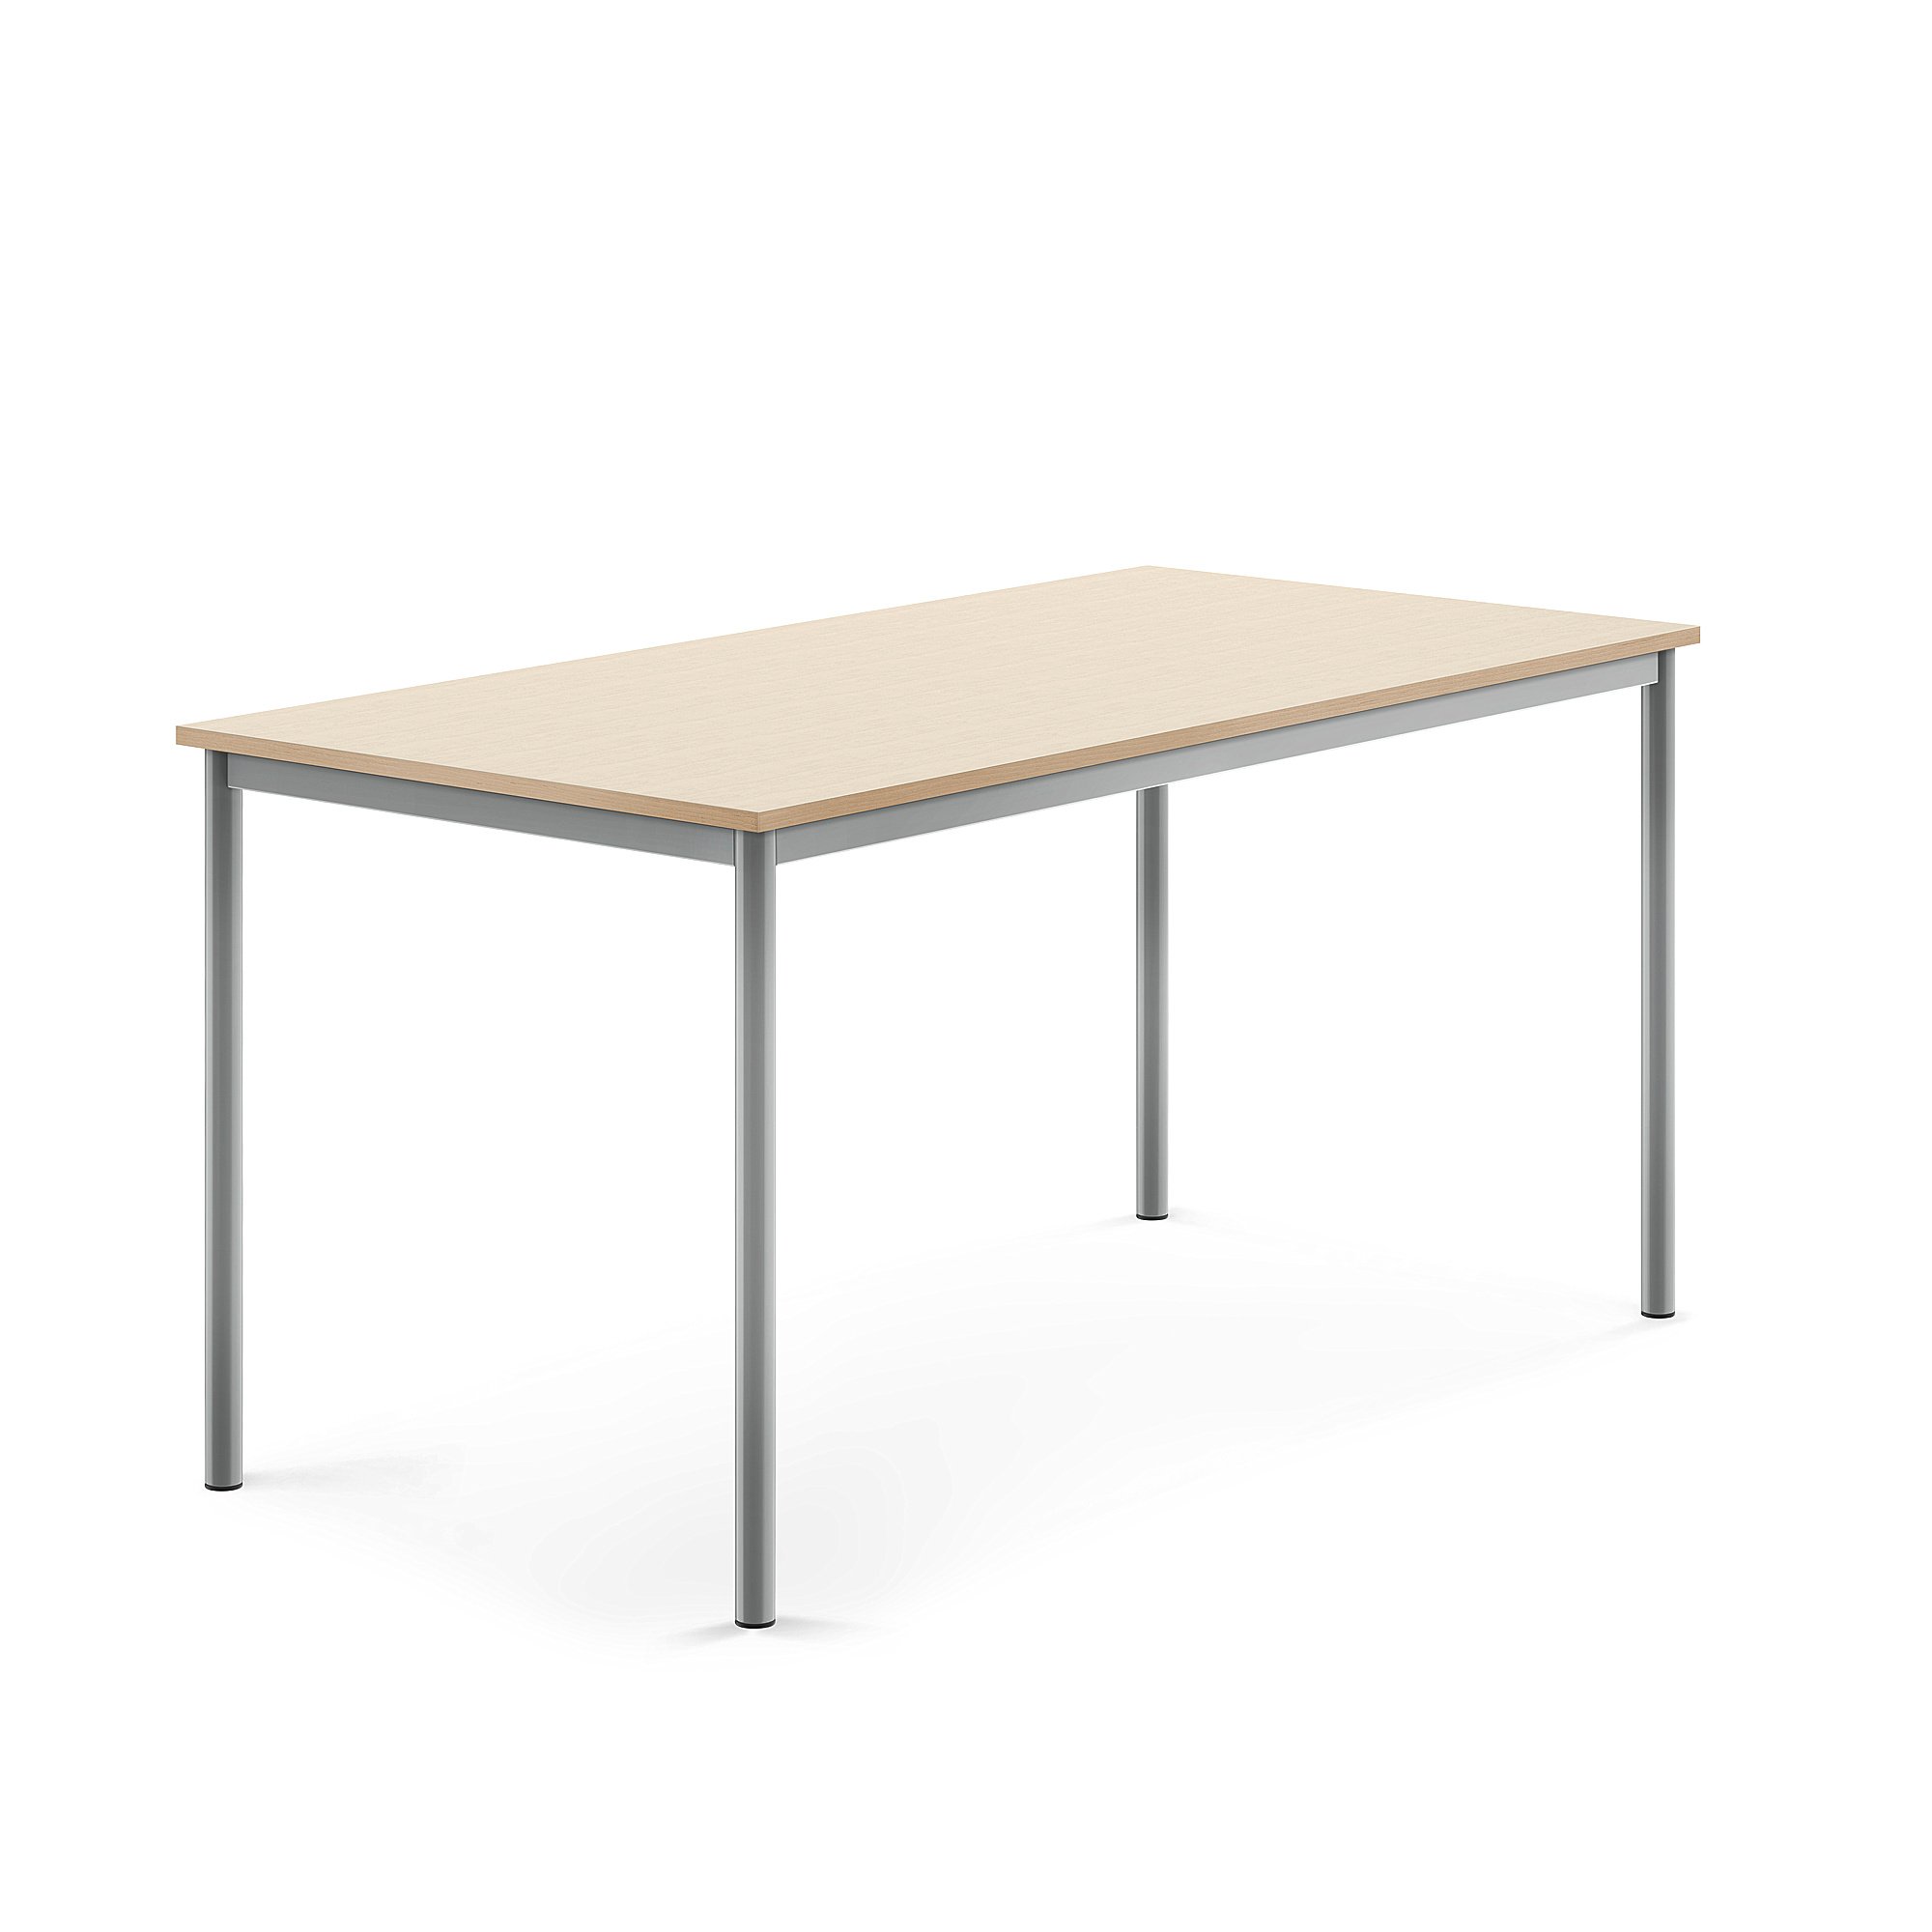 Stůl BORÅS, 1600x800x760 mm, stříbrné nohy, HPL deska, bříza